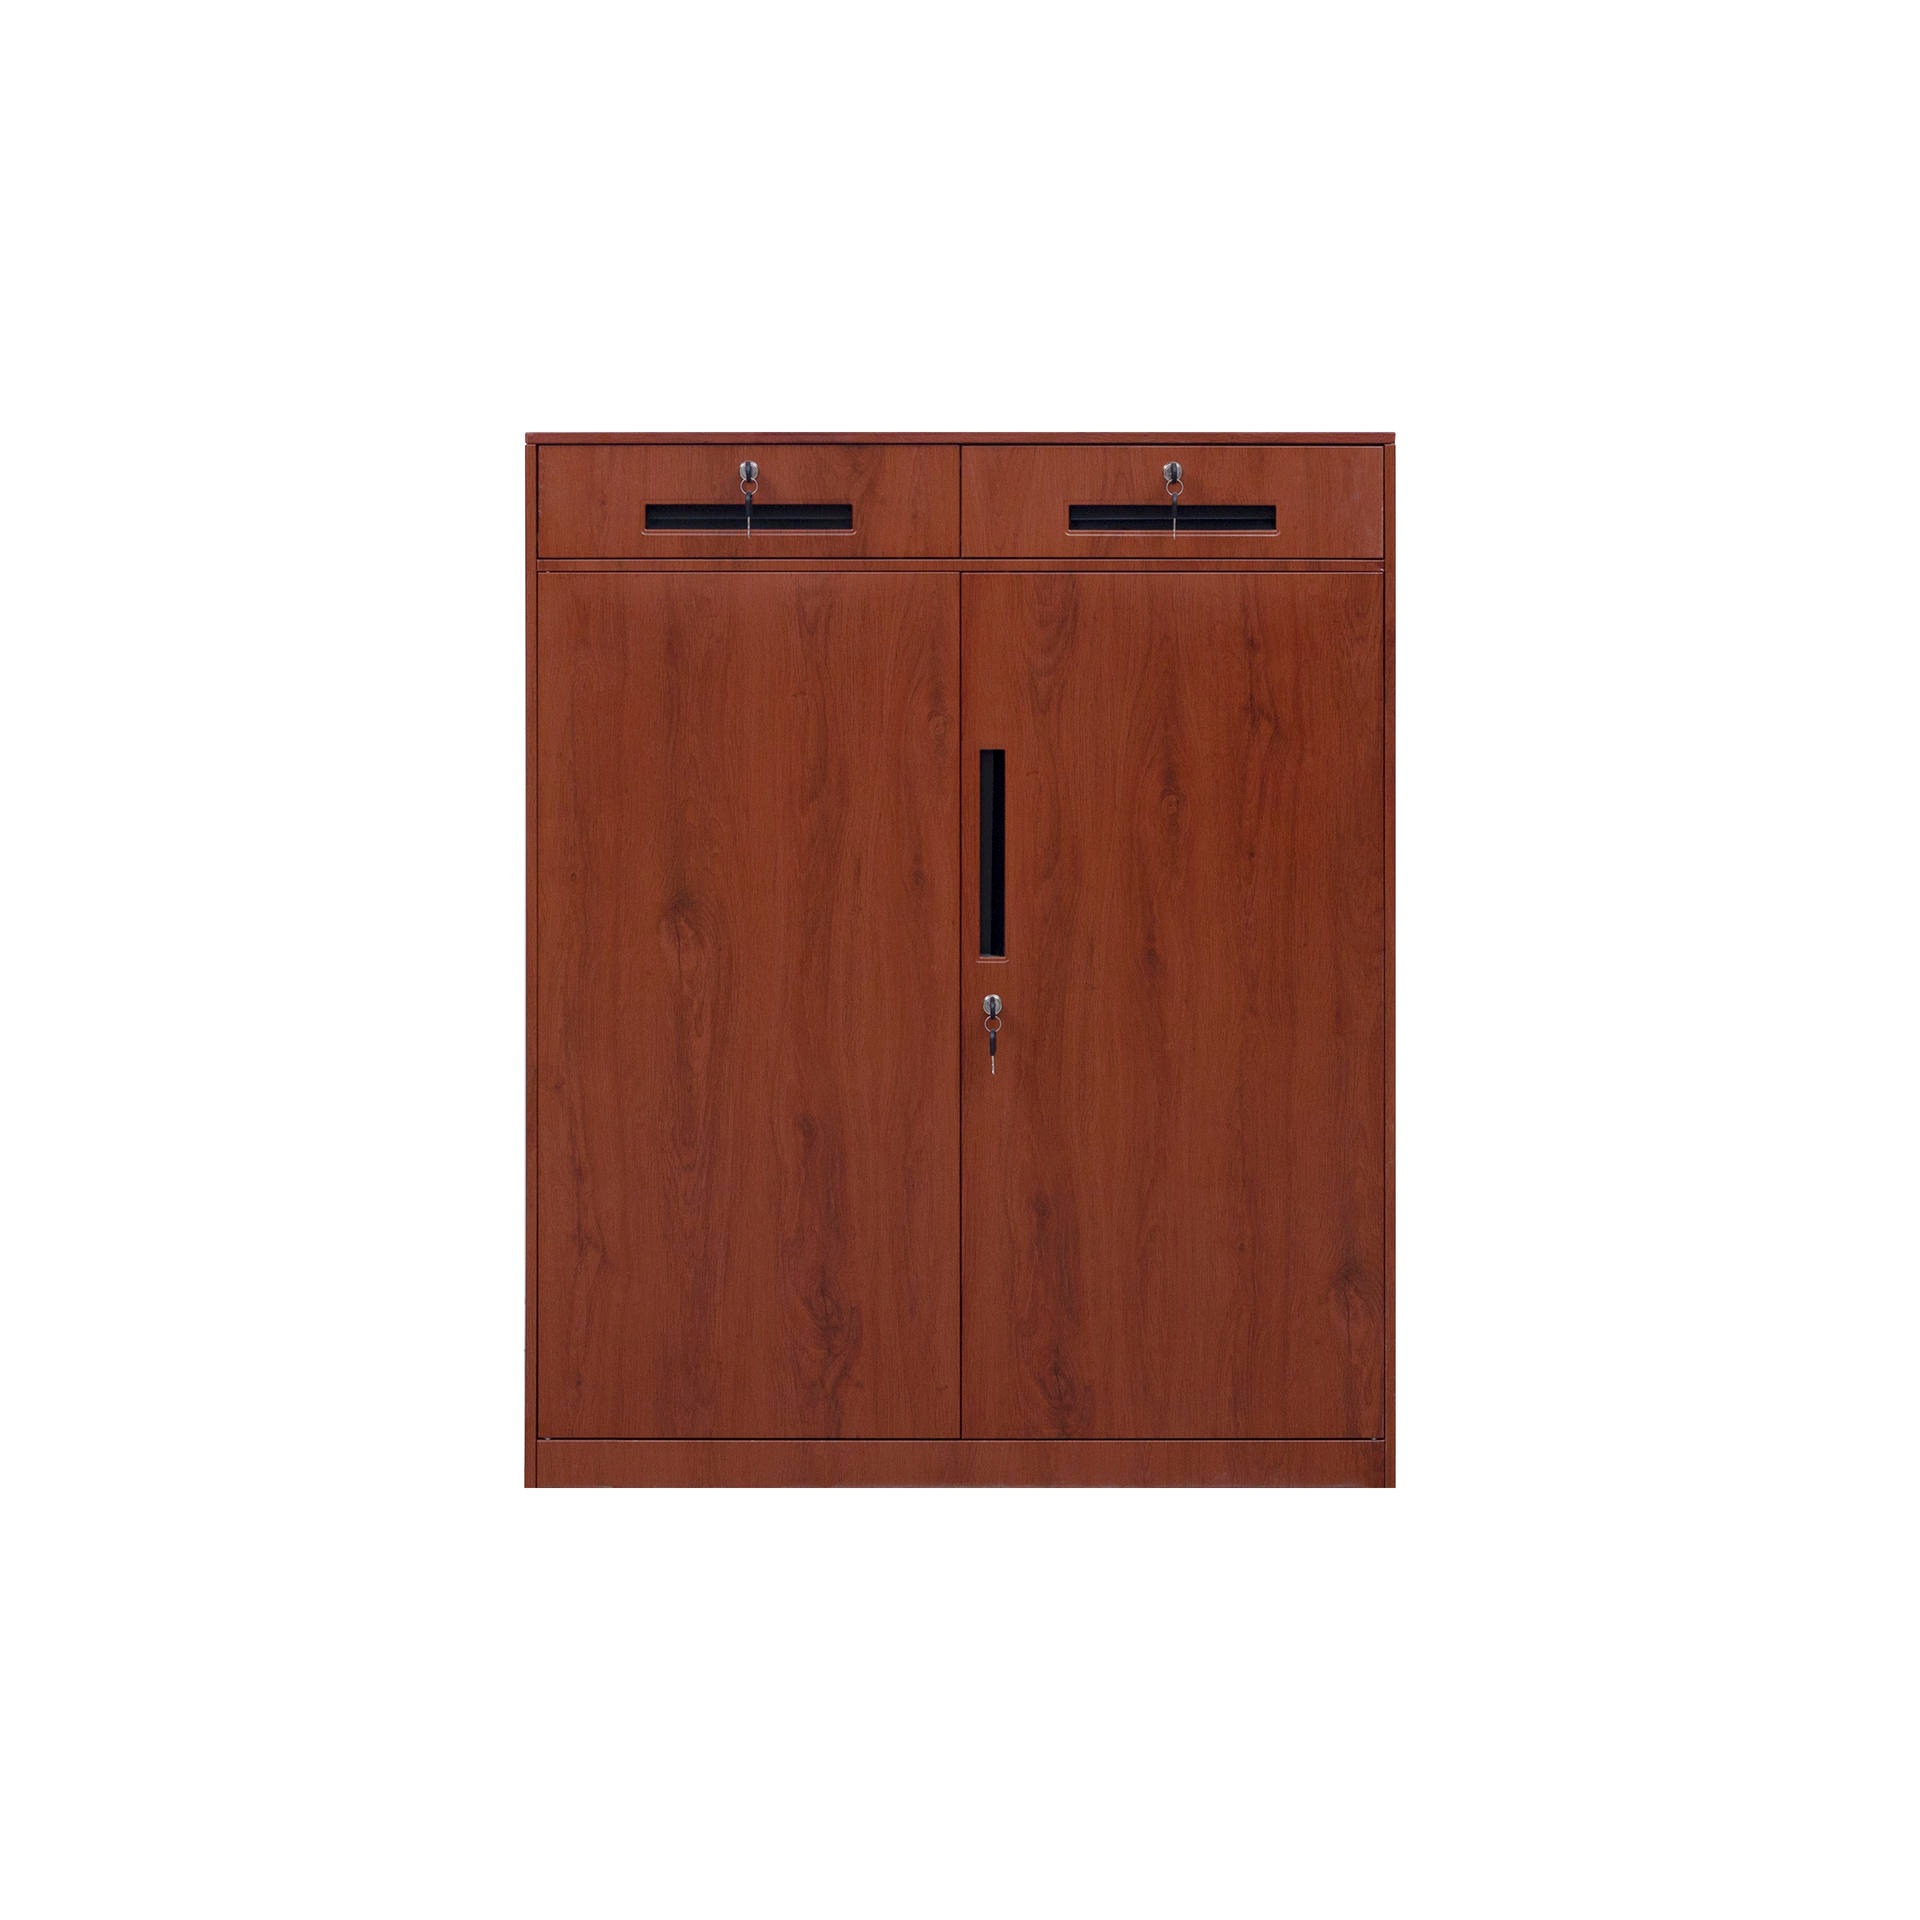 钢制仿木纹两斗矮柜钢制二斗档案柜对开门二斗矮柜两门抽屉式矮柜可调节式矮柜